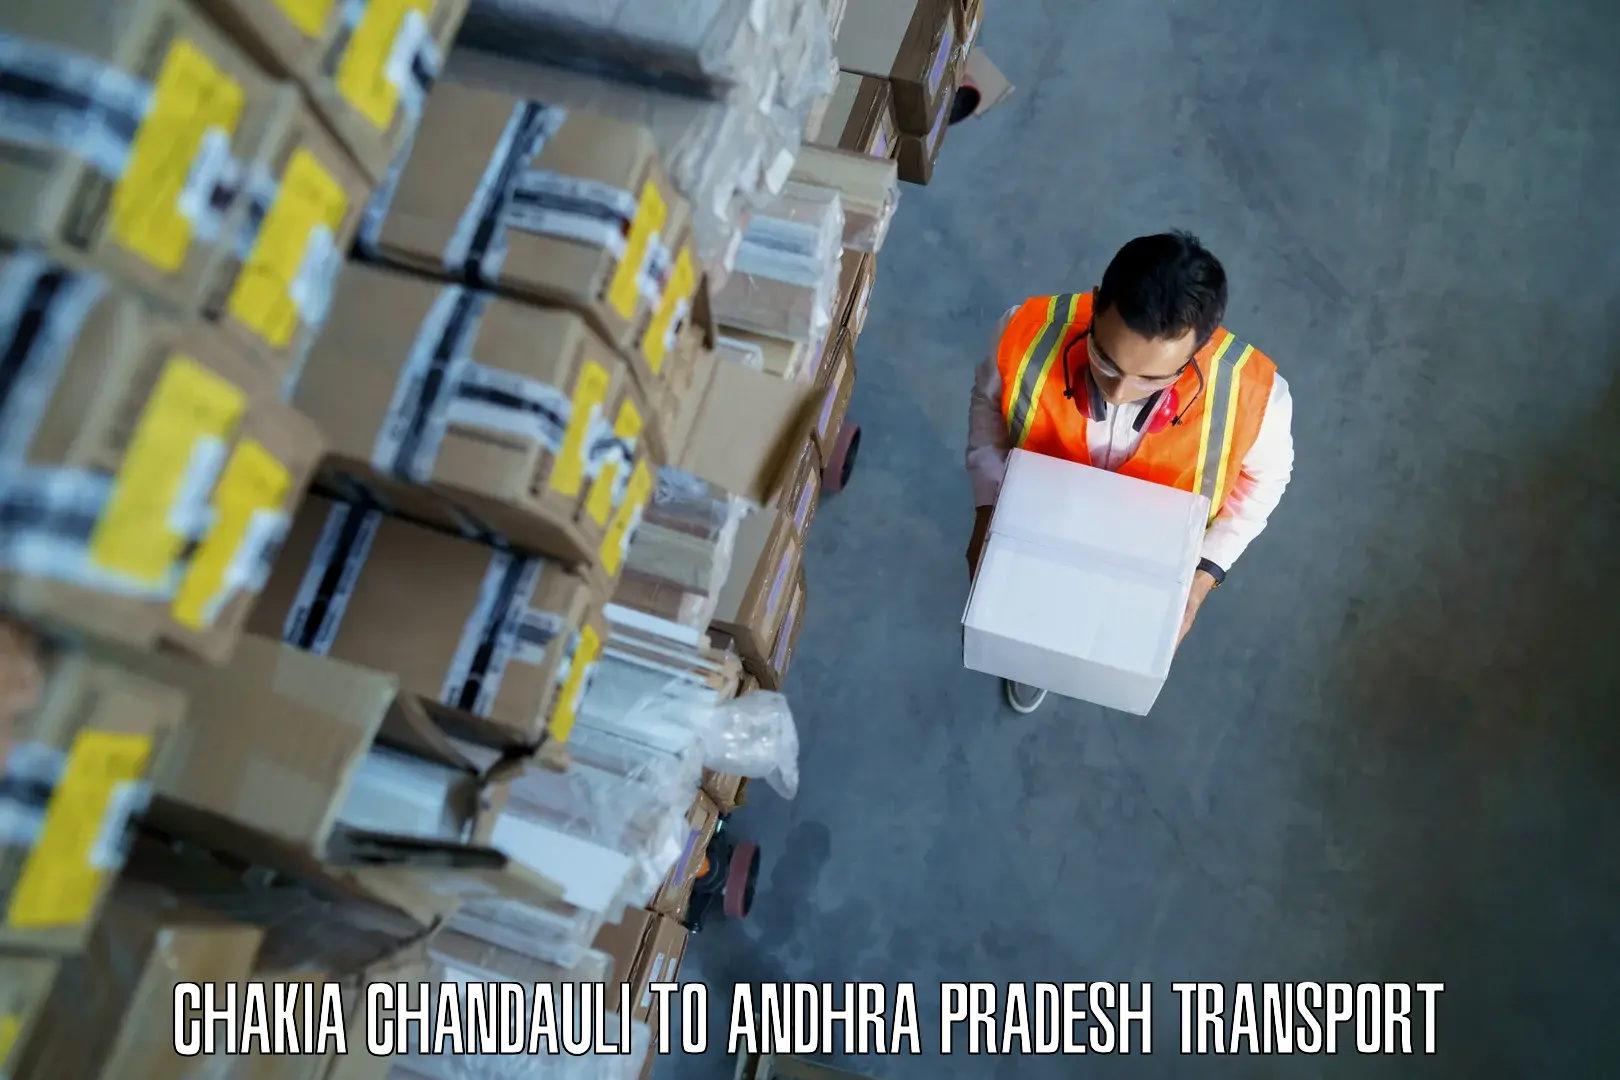 Pick up transport service Chakia Chandauli to Amadalavalasa